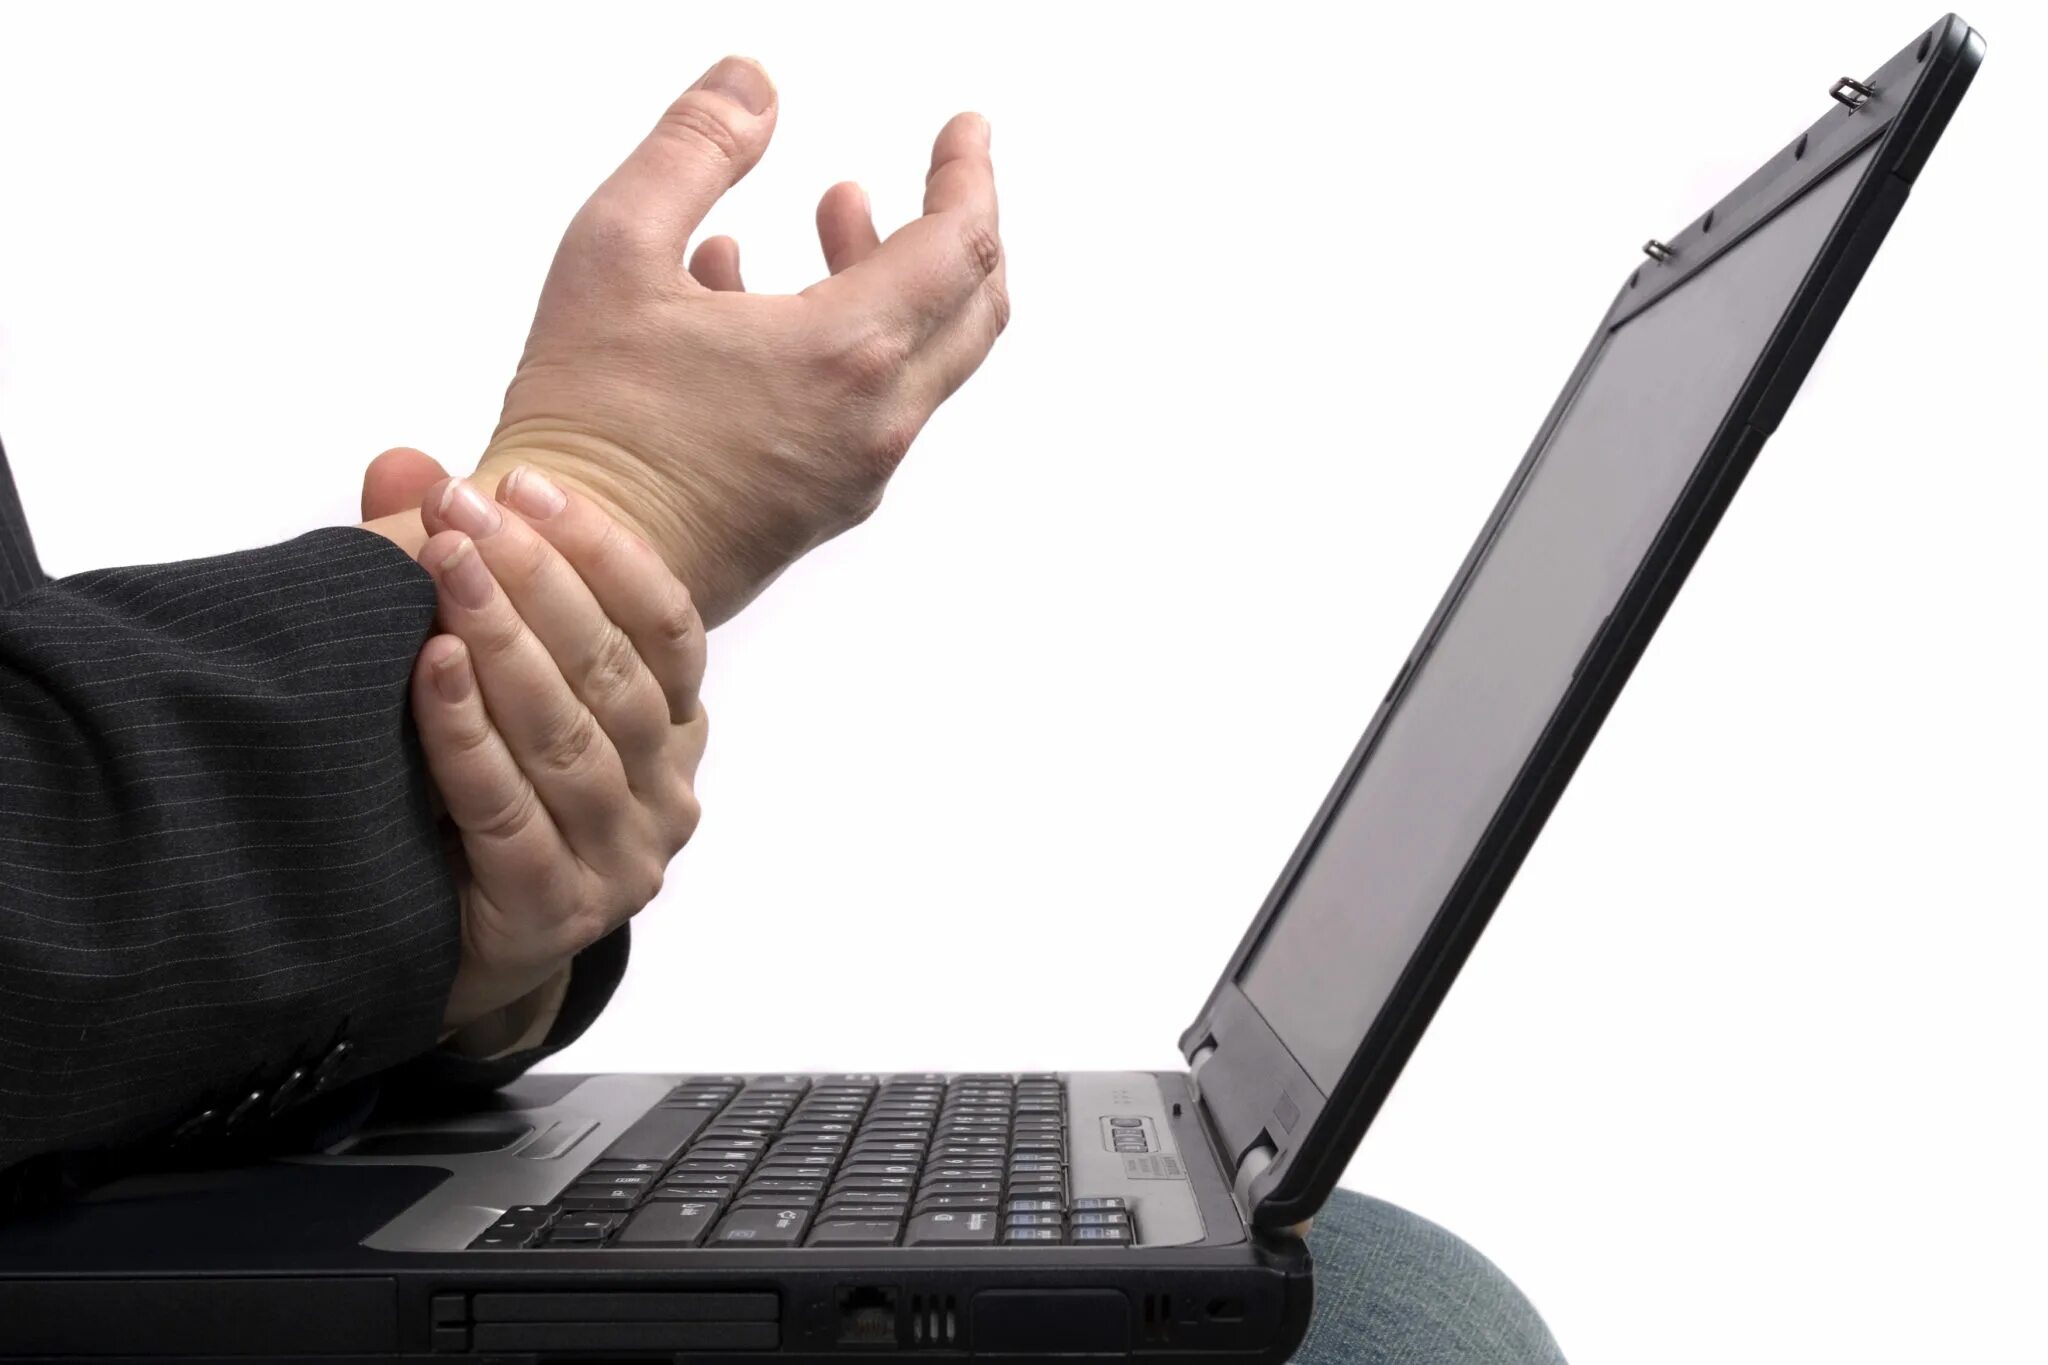 Быстро устают руки. Руки и компьютер. Кисти рук за компьютером. Заболевания кистей рук от компьютера. Перегрузка суставов кистей за компьютером.